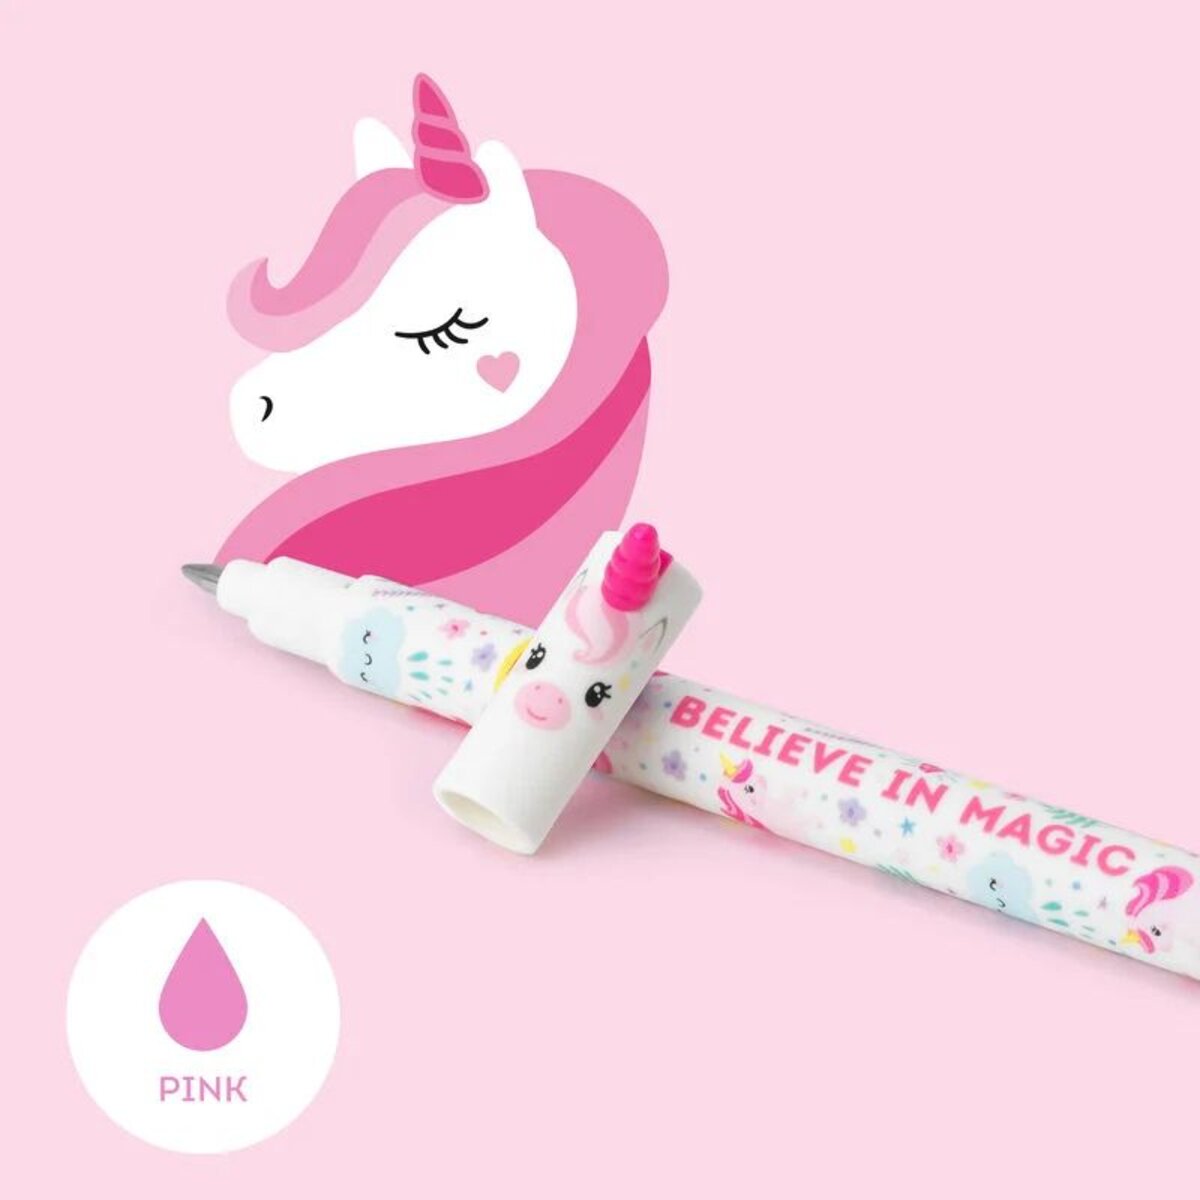 Legami Löschbarer Gelstift - Erasable Pen, rosa Einhorn